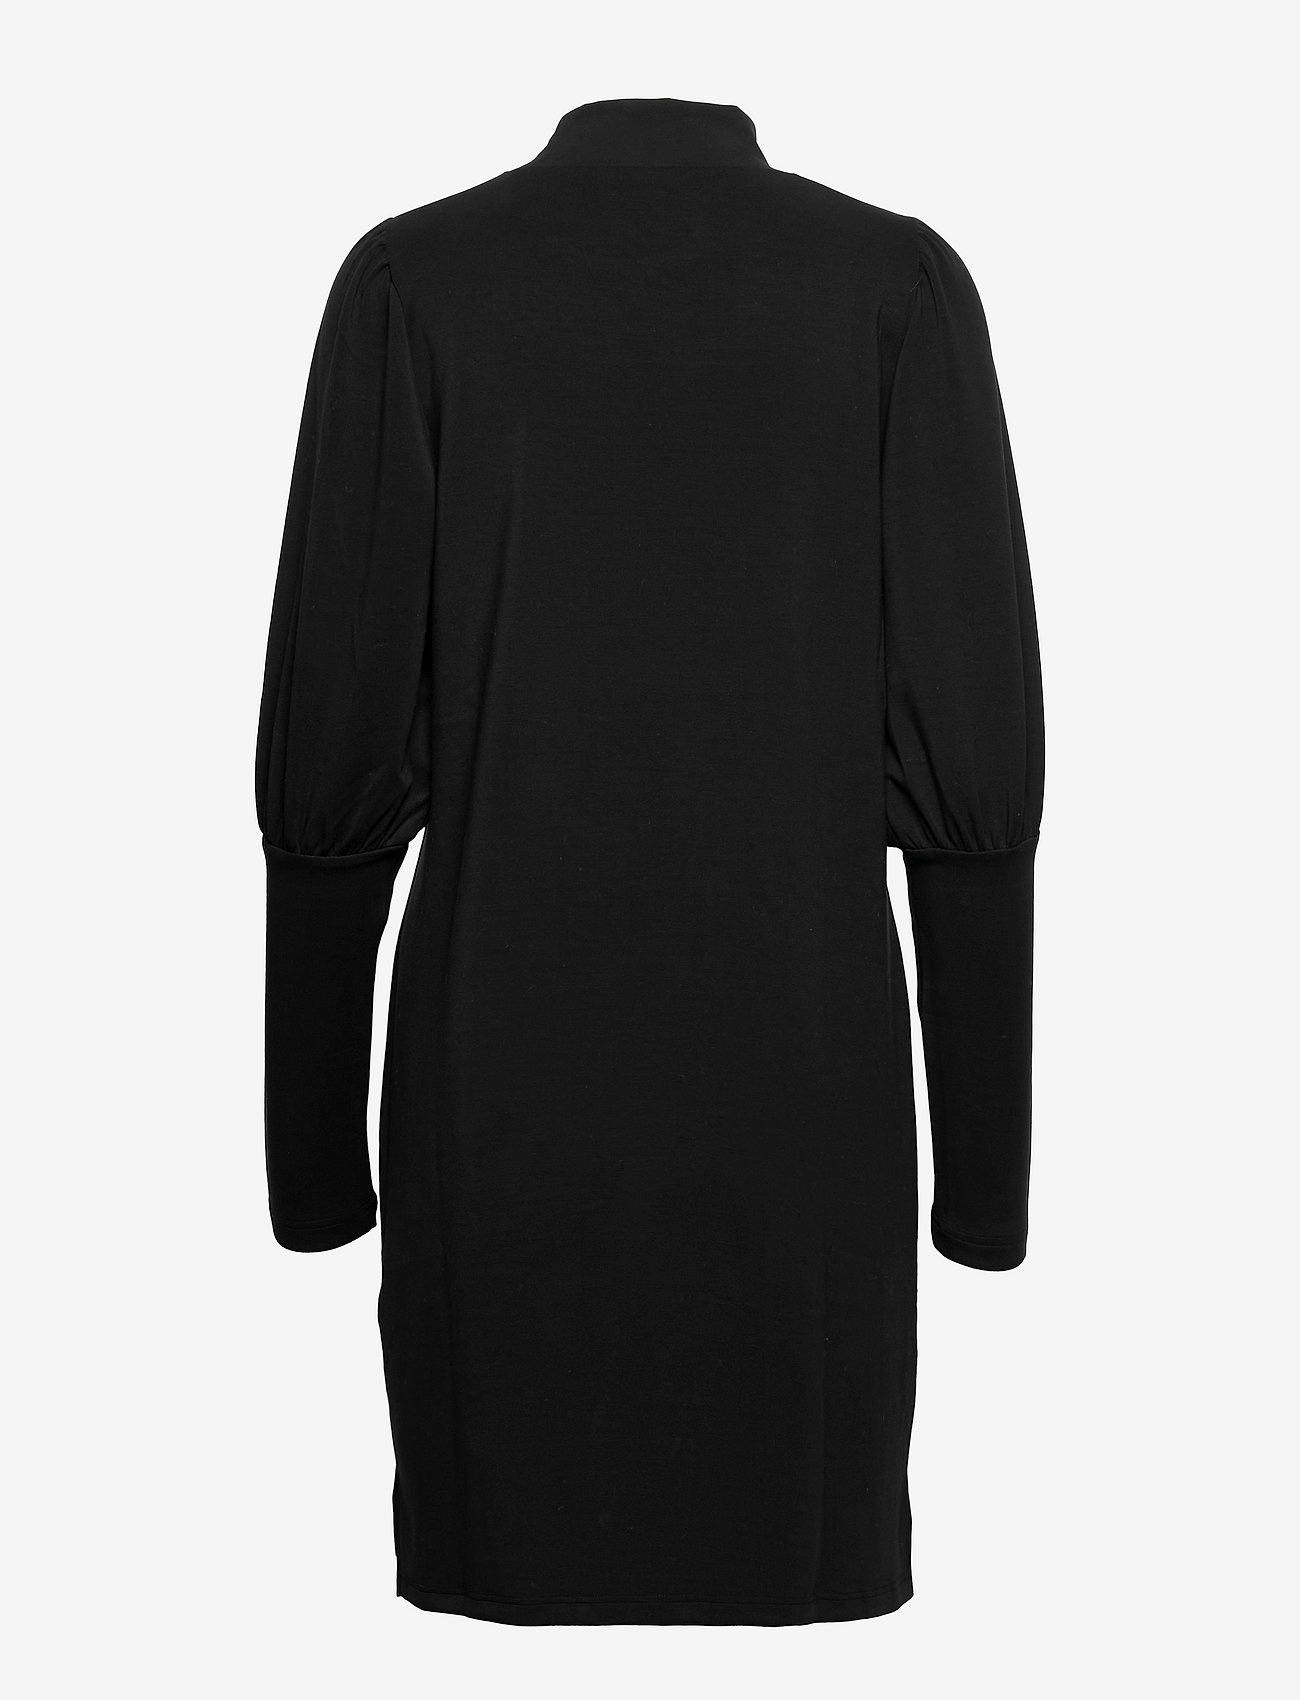 My Essential Wardrobe - MWElle Puff Dress - korte jurken - black - 1